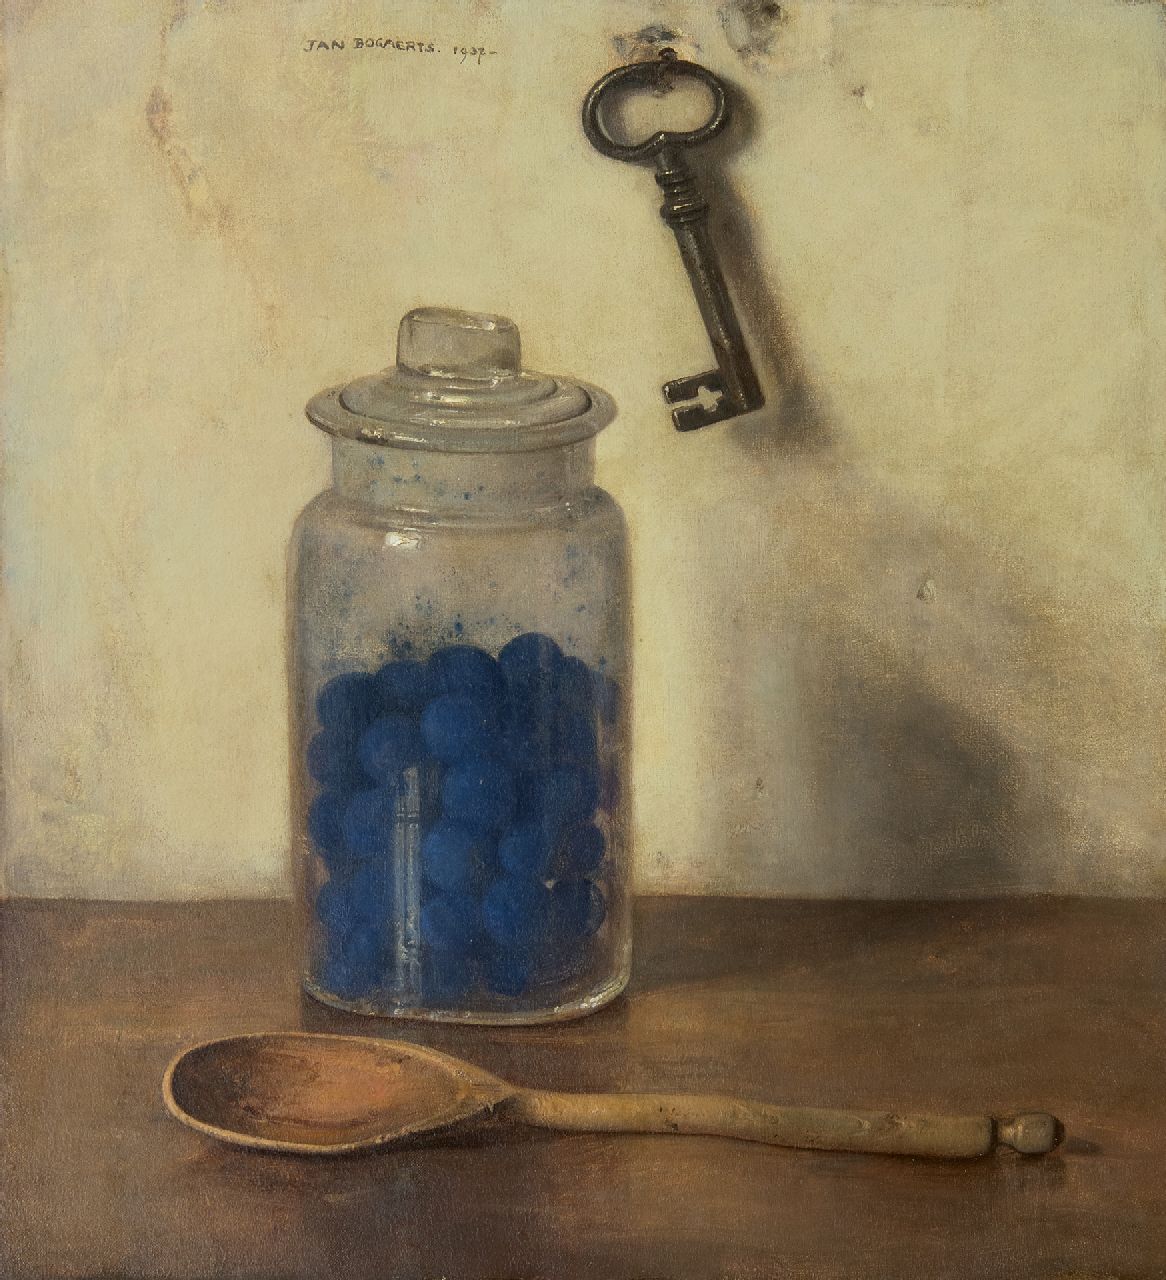 Bogaerts J.J.M.  | Johannes Jacobus Maria 'Jan' Bogaerts | Schilderijen te koop aangeboden | Glazen pot met blauwselbollen, olieverf op doek 36,0 x 32,9 cm, gesigneerd m.b. en gedateerd 1937